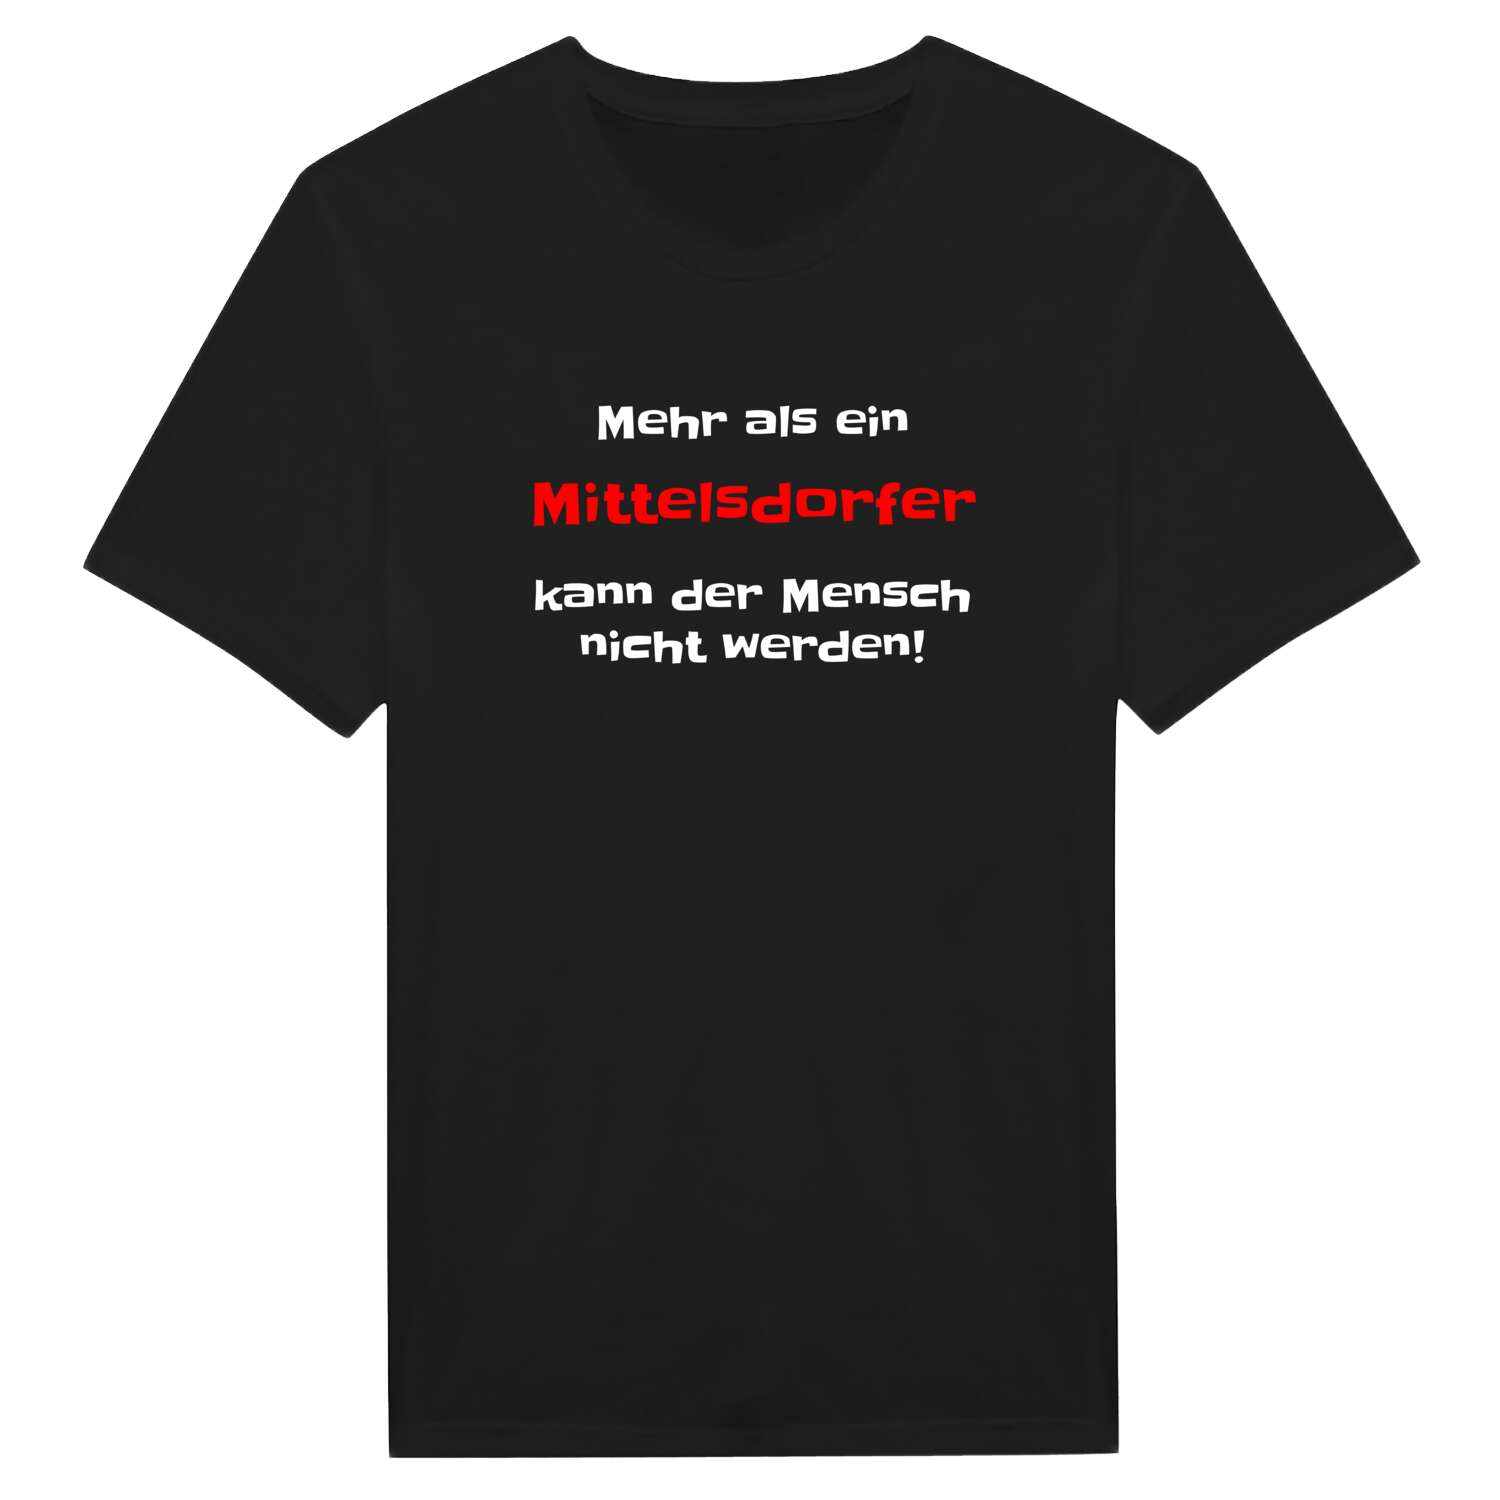 Mittelsdorf T-Shirt »Mehr als ein«